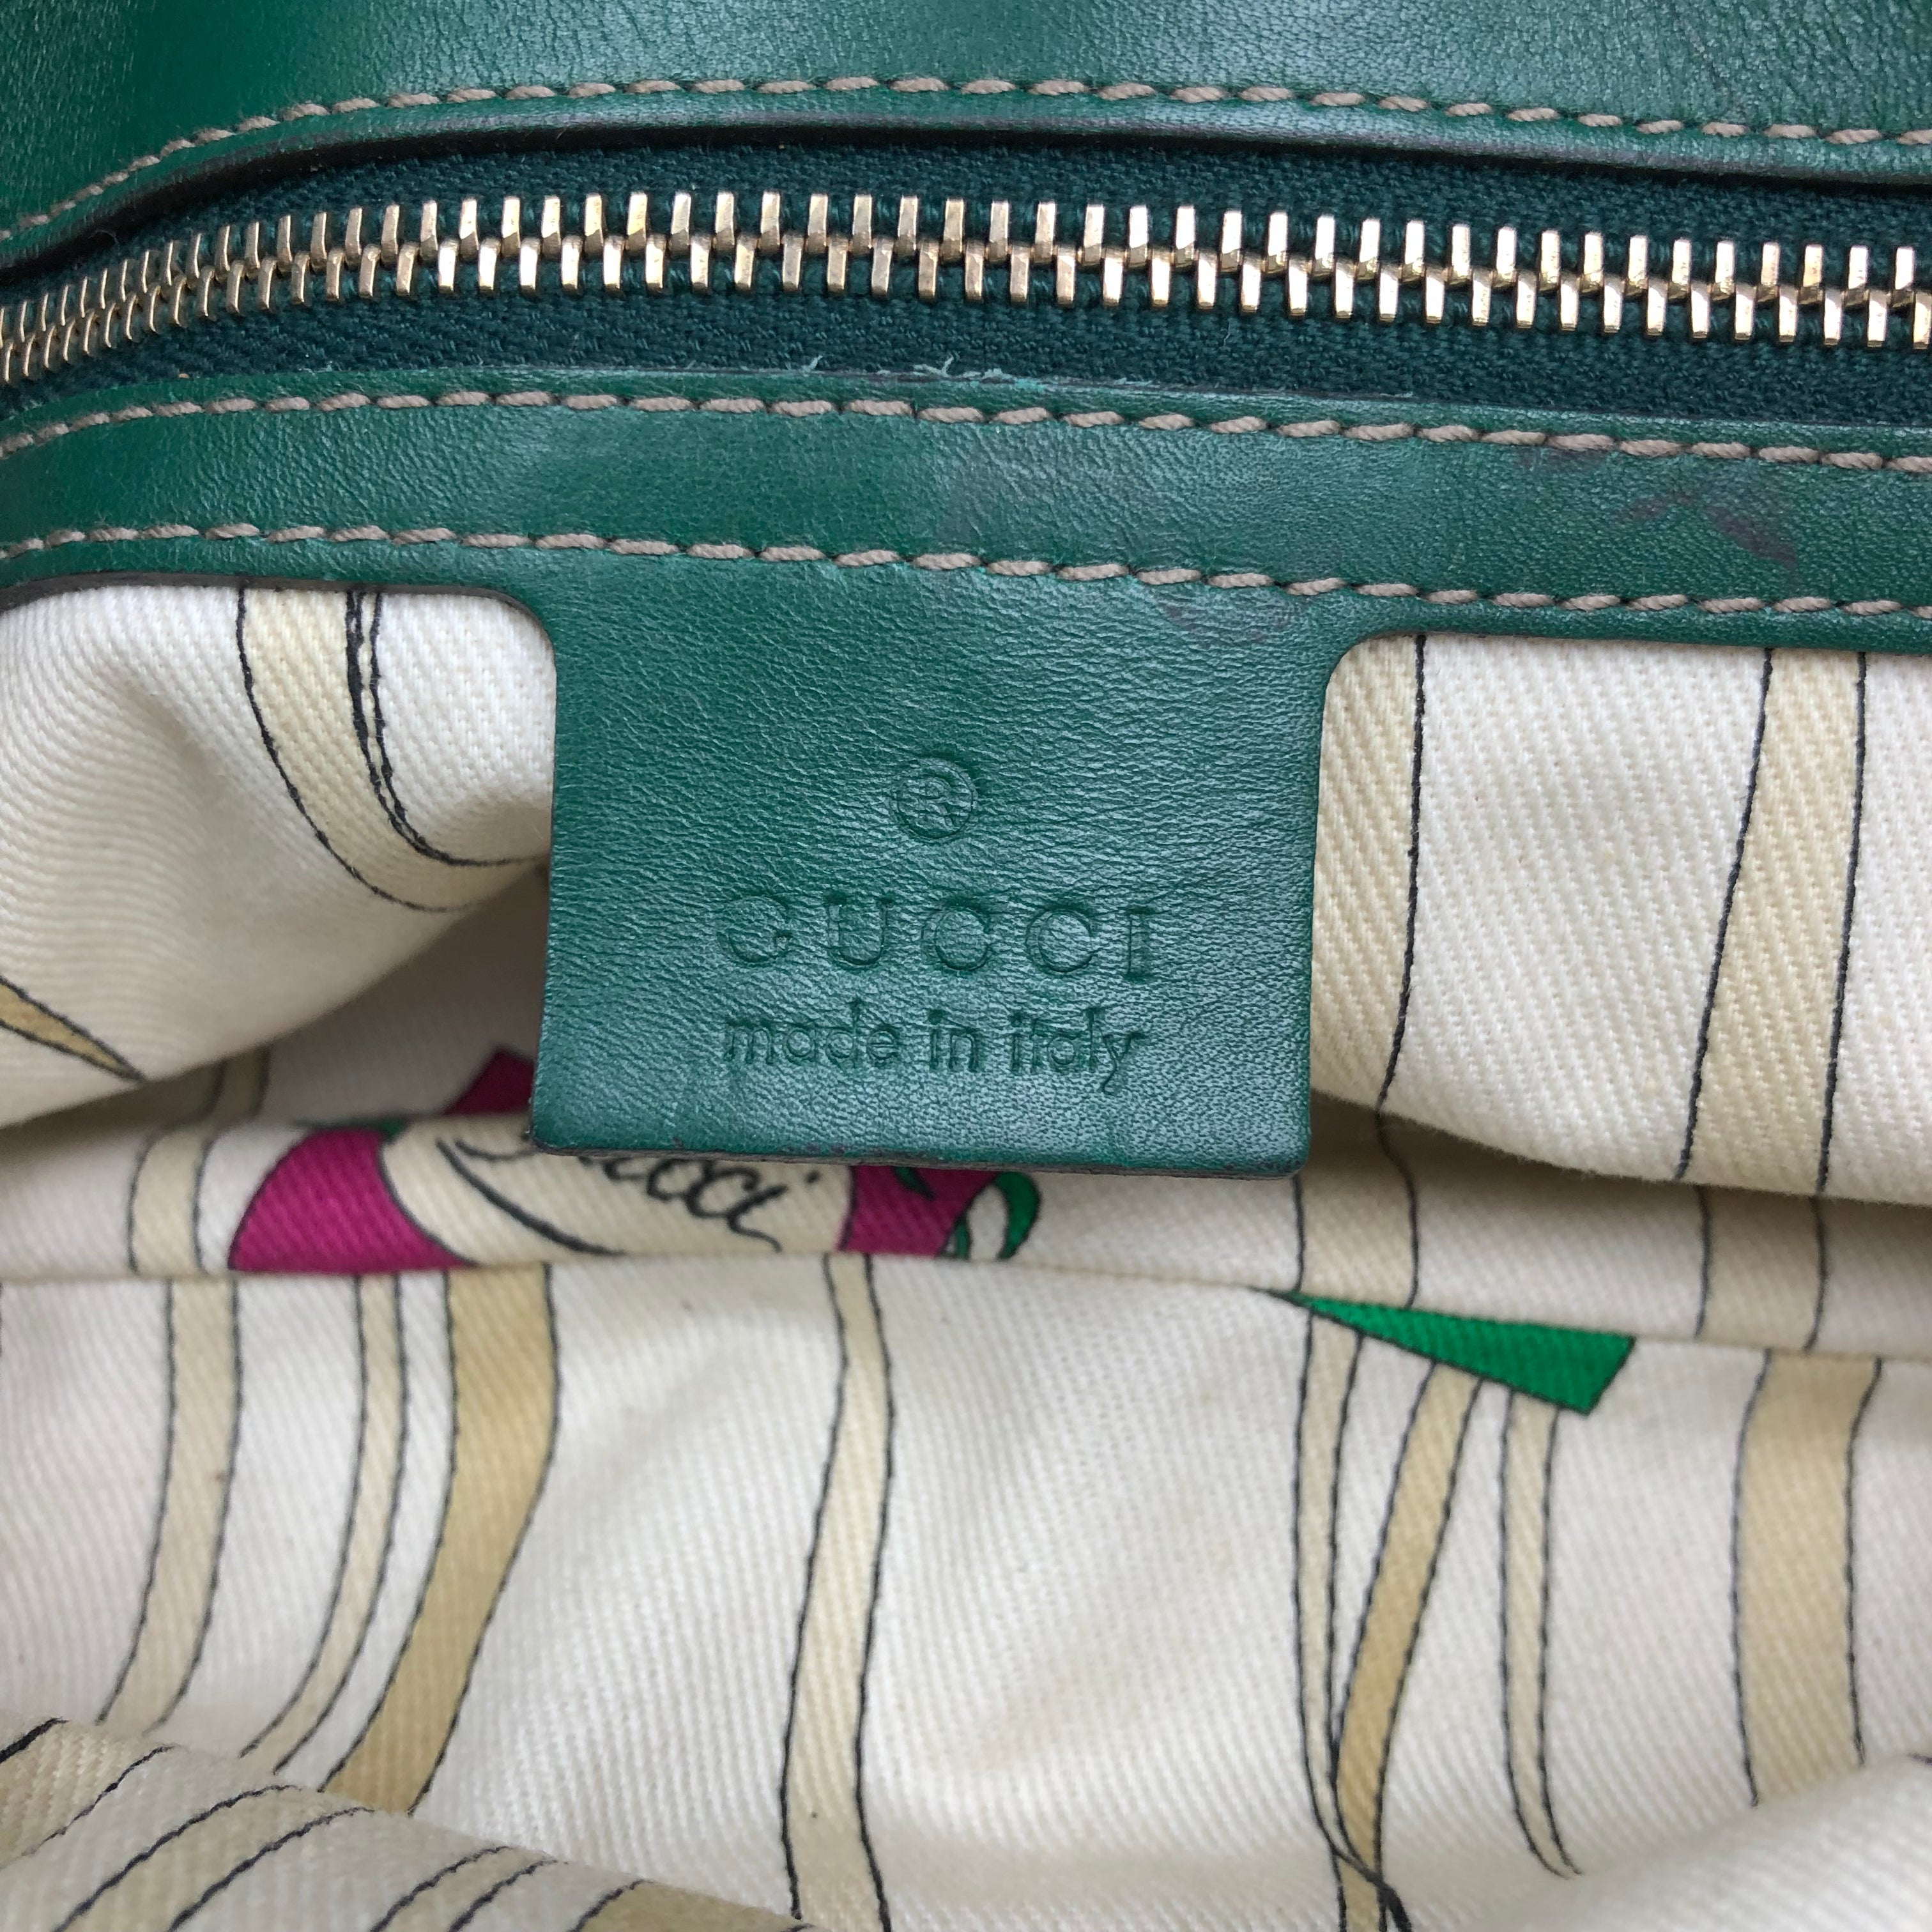 Gucci Horsebit Shoulder Bag